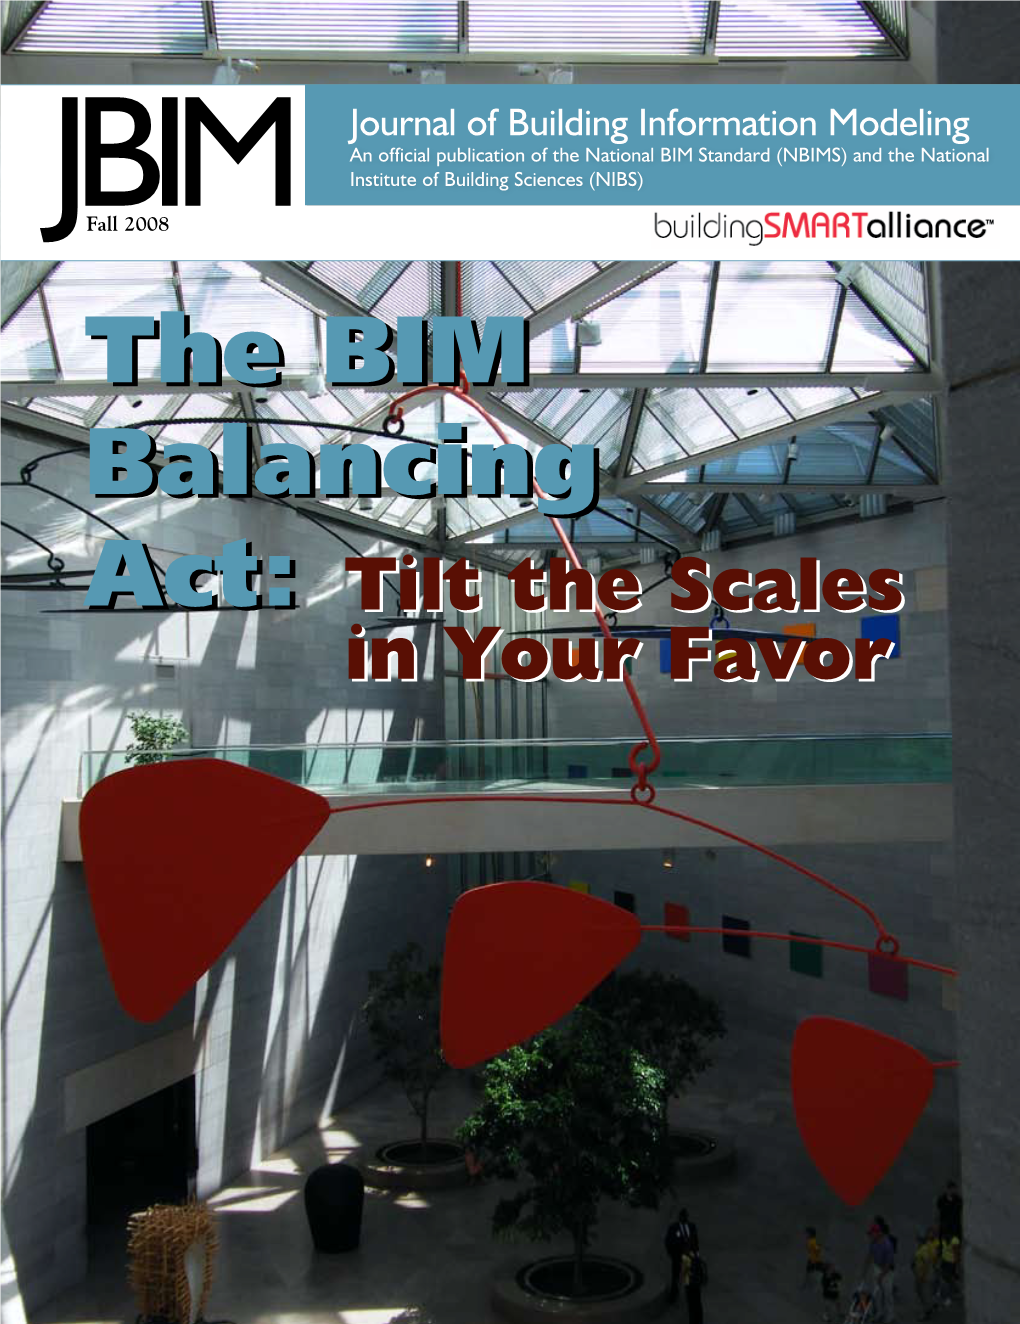 Journal of Building Information Modeling (JBIM)